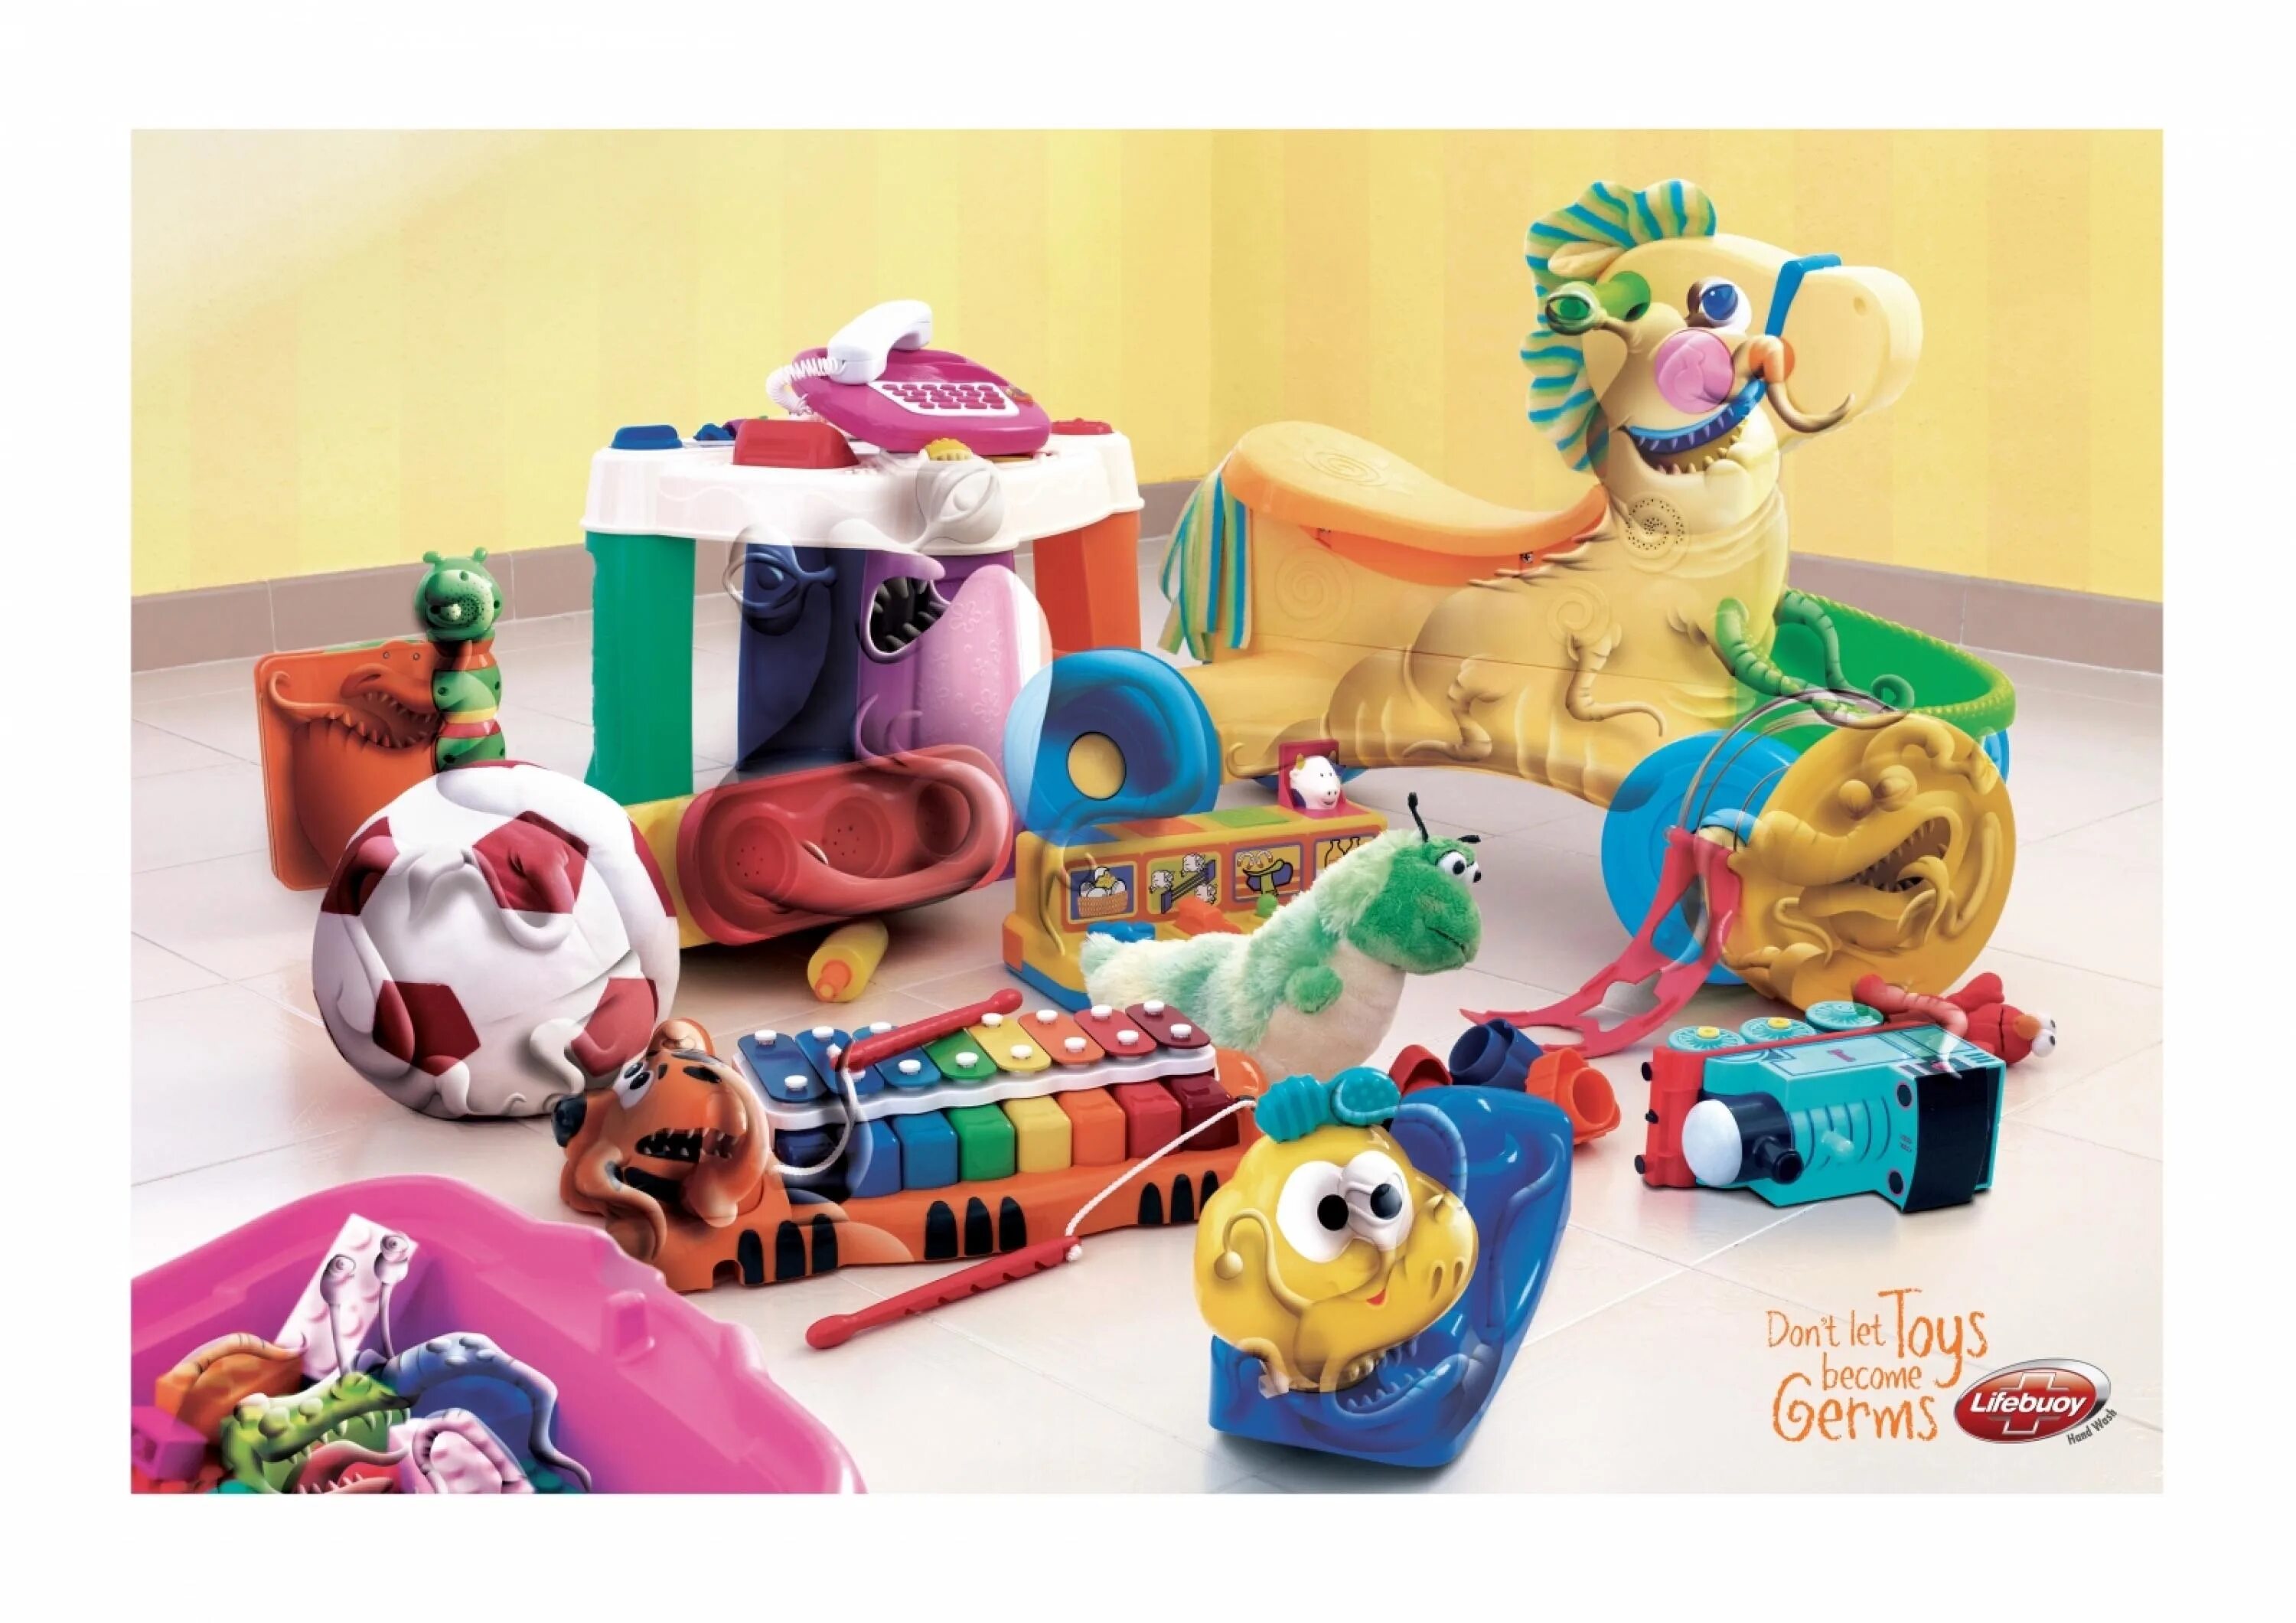 Реклама игрушек. Реклама игрушек для детей. Детская реклама игрушек. Рекламаа игрушкт. Рекламировать игрушки